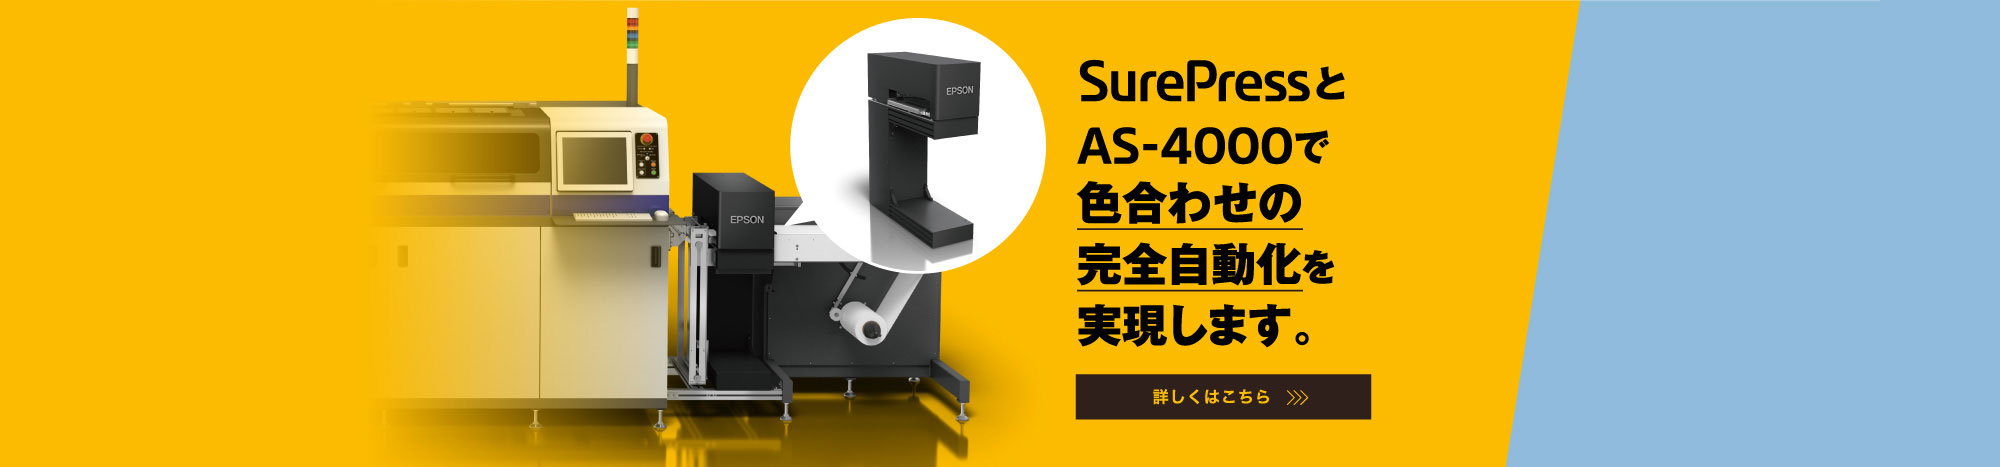 SurePressとNEW AS-4000で色合わせの完全自動化を実現します。 詳しくはこちら